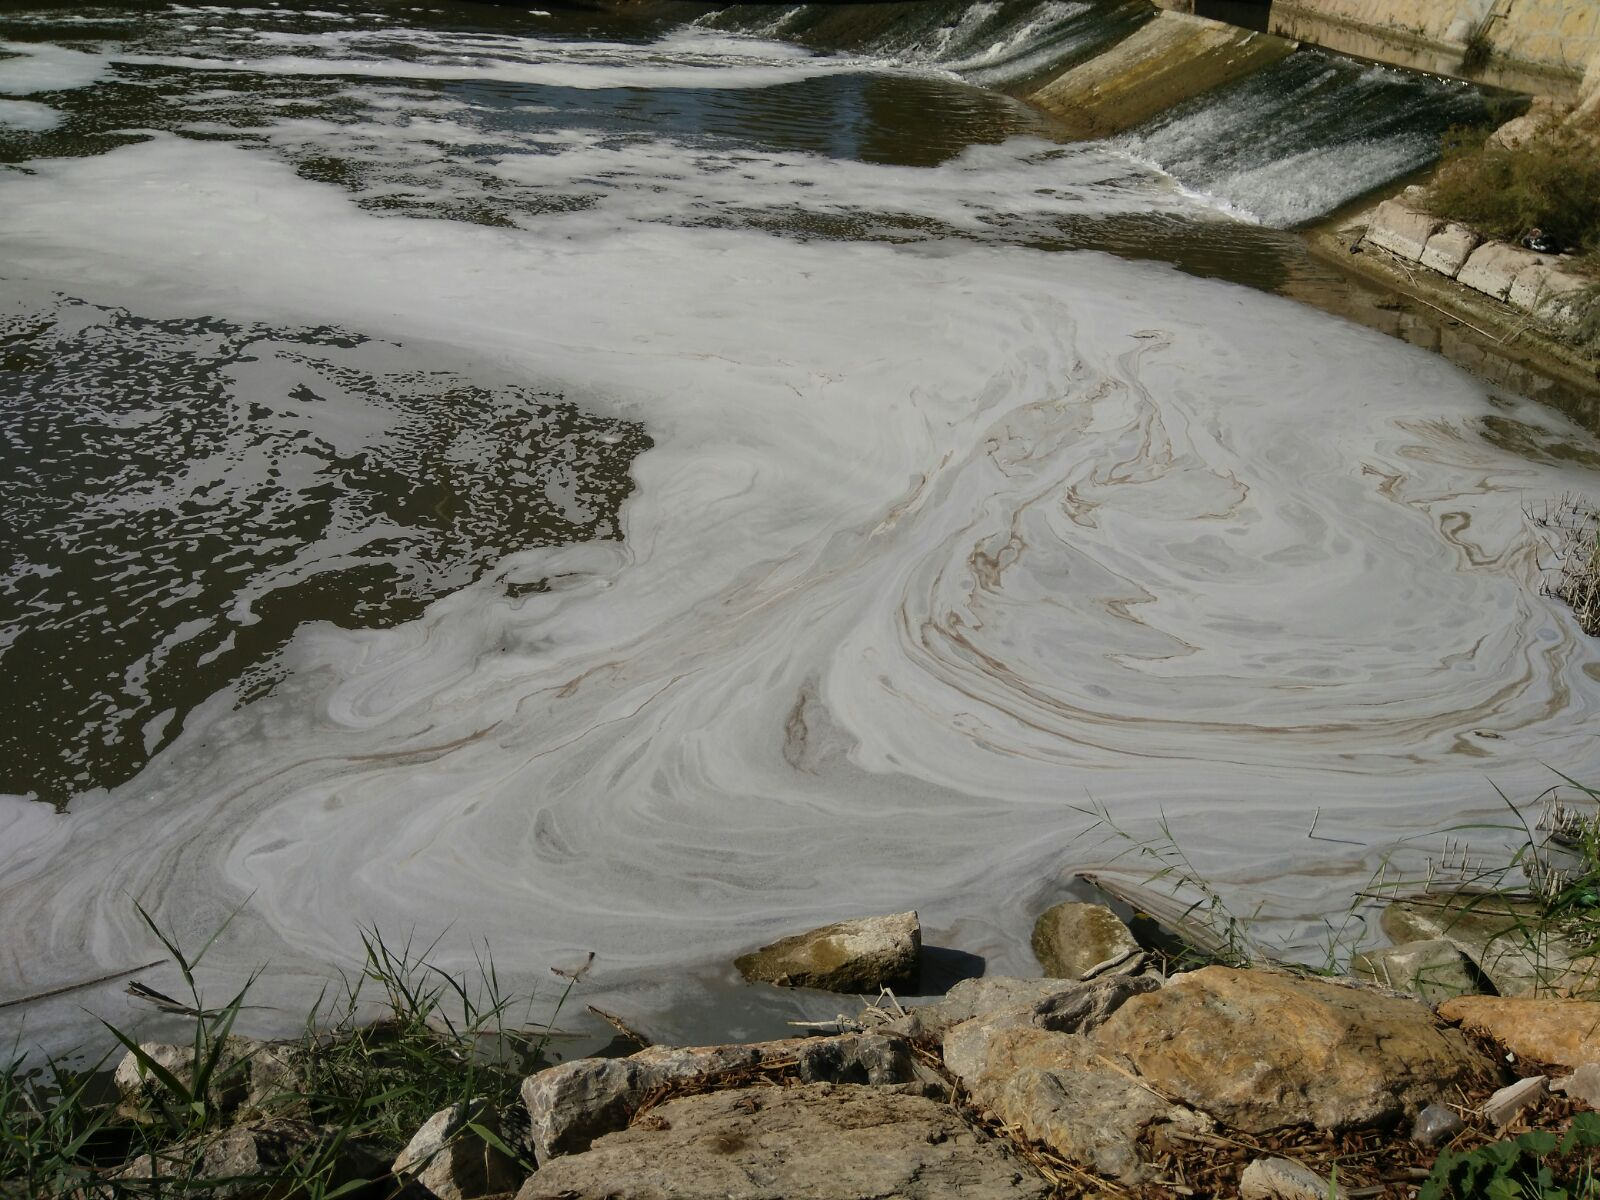 Un episodio anterior de contaminación en el río Segura. Imagen: EEA